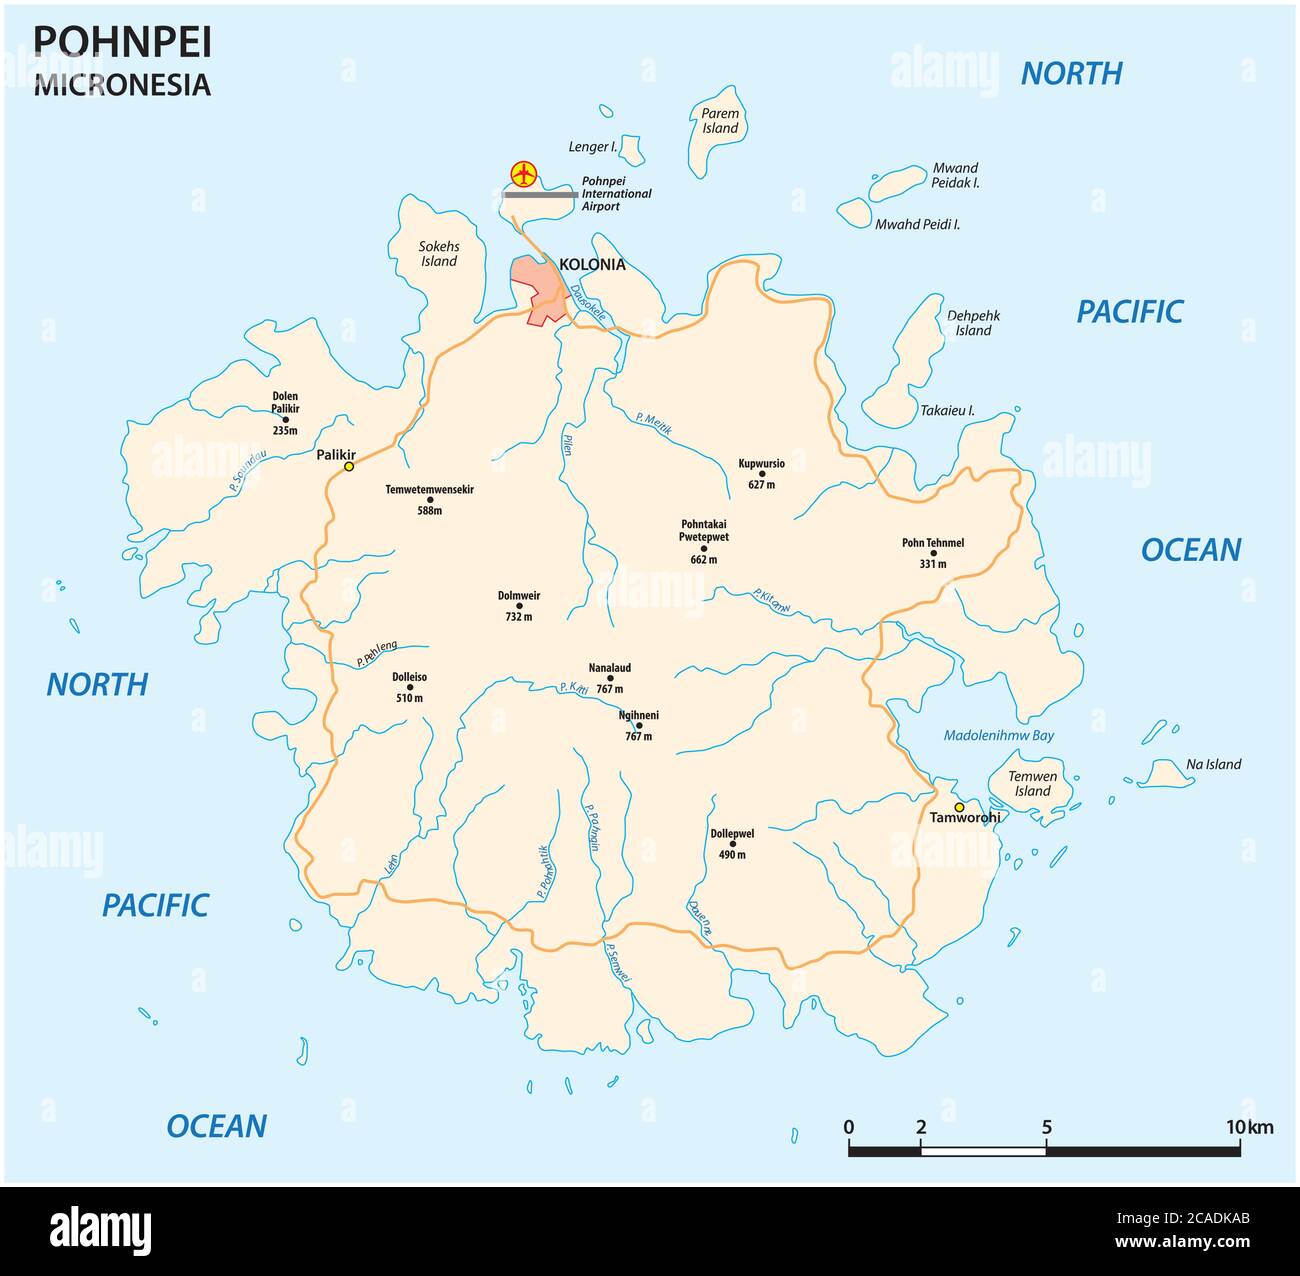 Mapa de carreteras de vectores de la principal isla micronesia de Pohnpei Ilustración del Vector